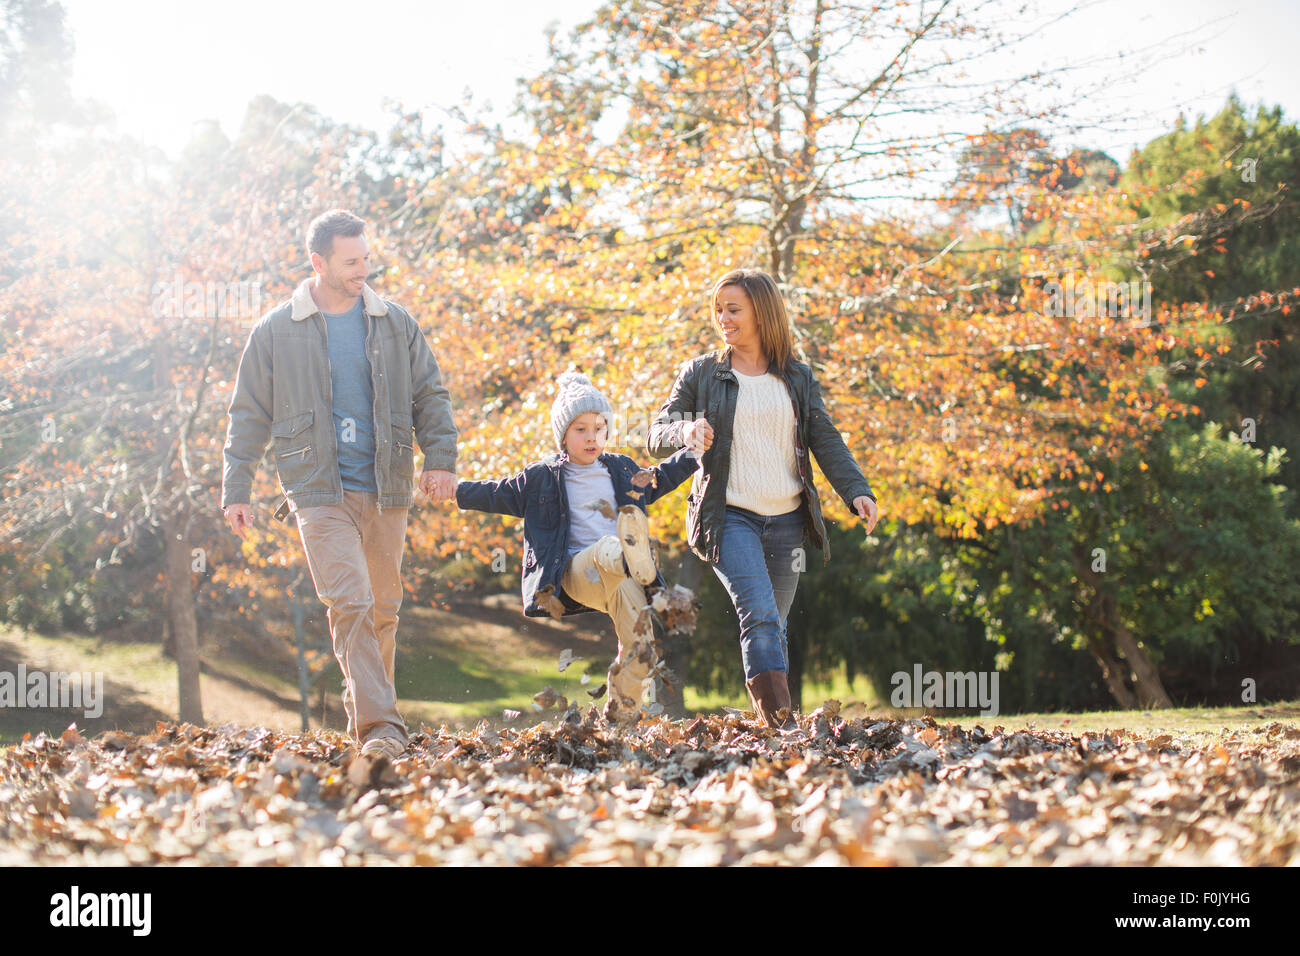 Las manos de la familia y pasear en hojas de otoño Foto de stock